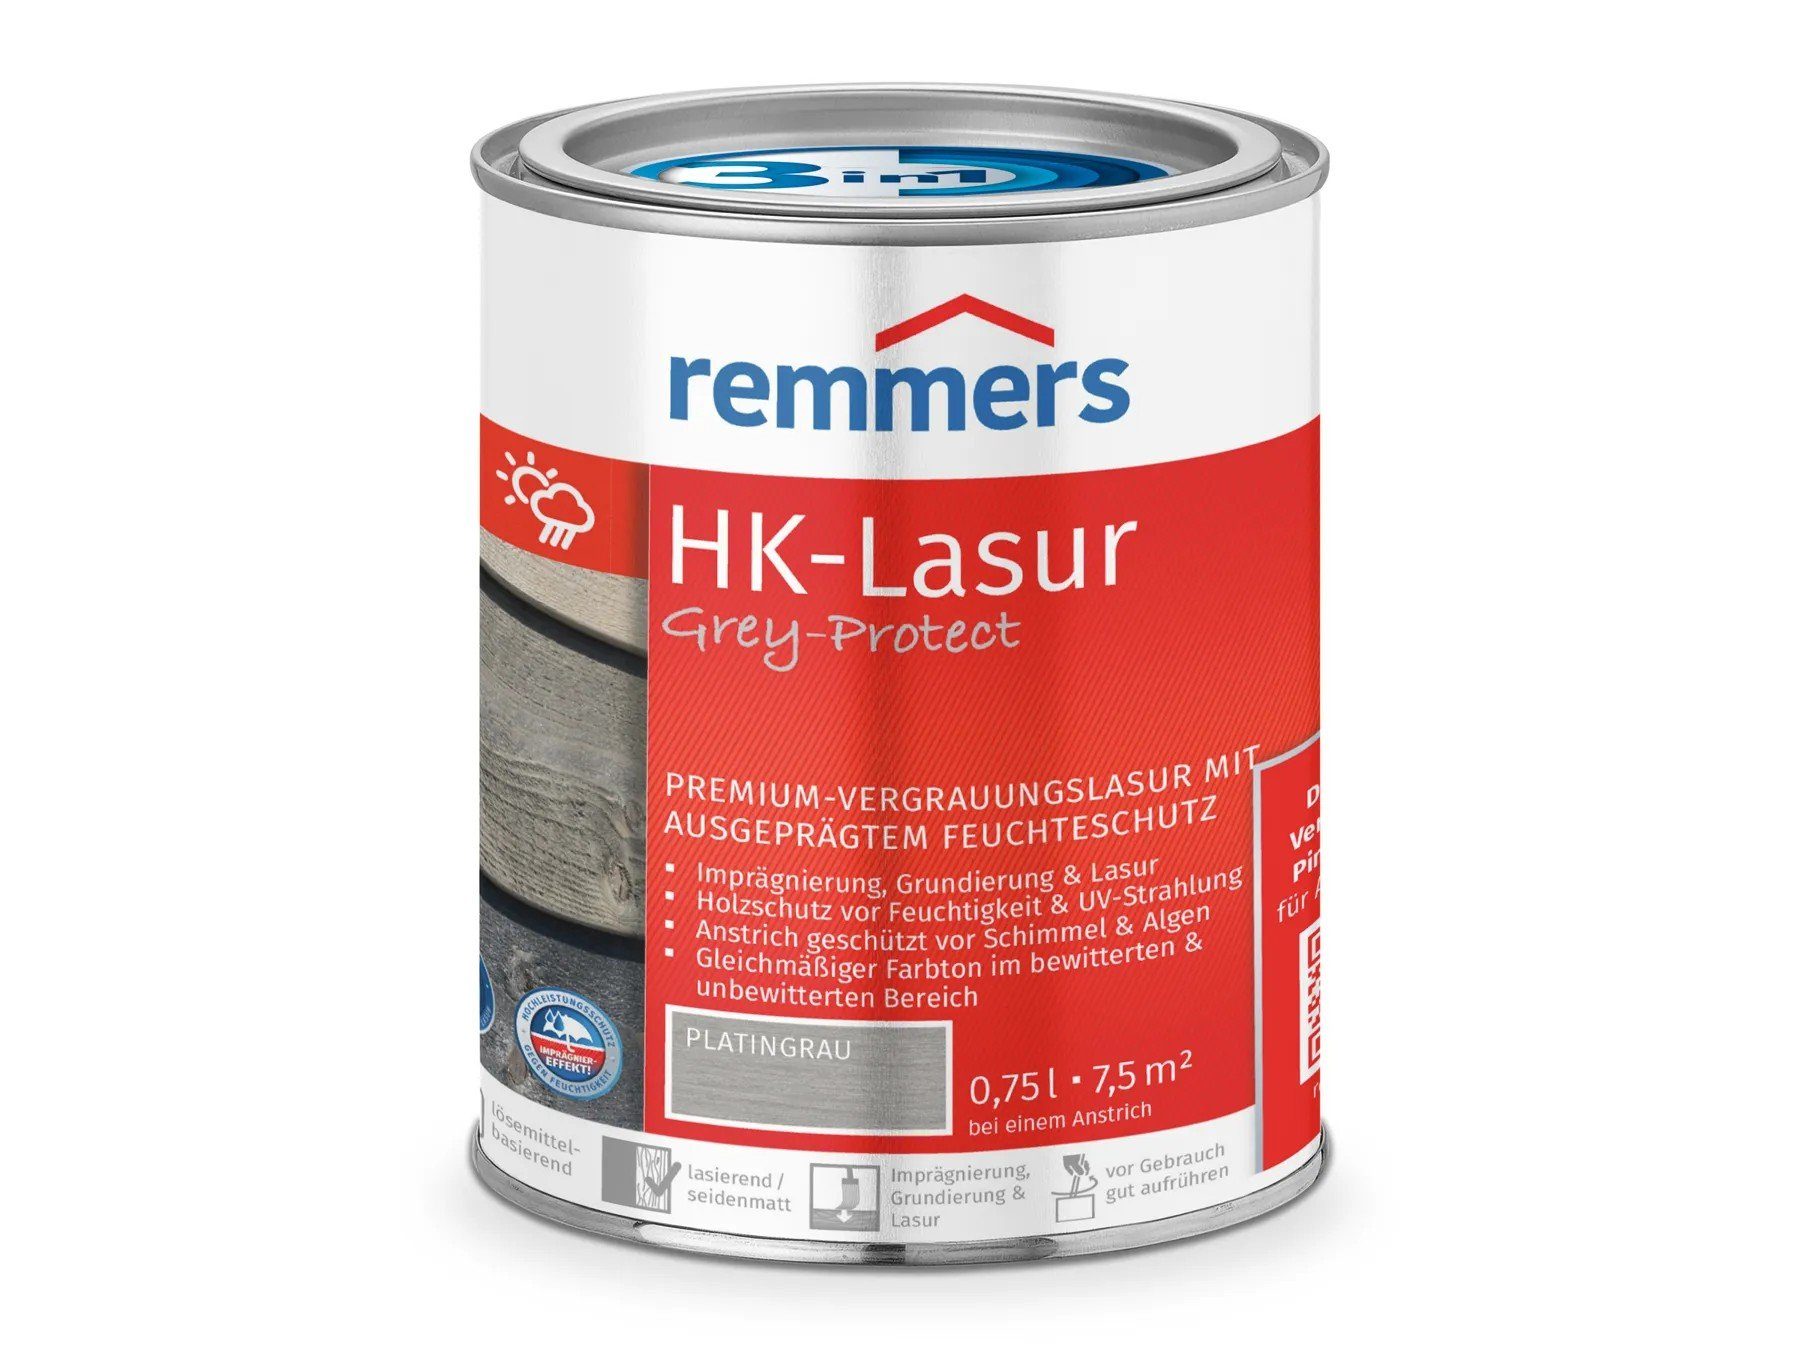 Remmers Holzschutzlasur HK-Lasur 3in1 Grey-Protect platingrau (FT-26788)